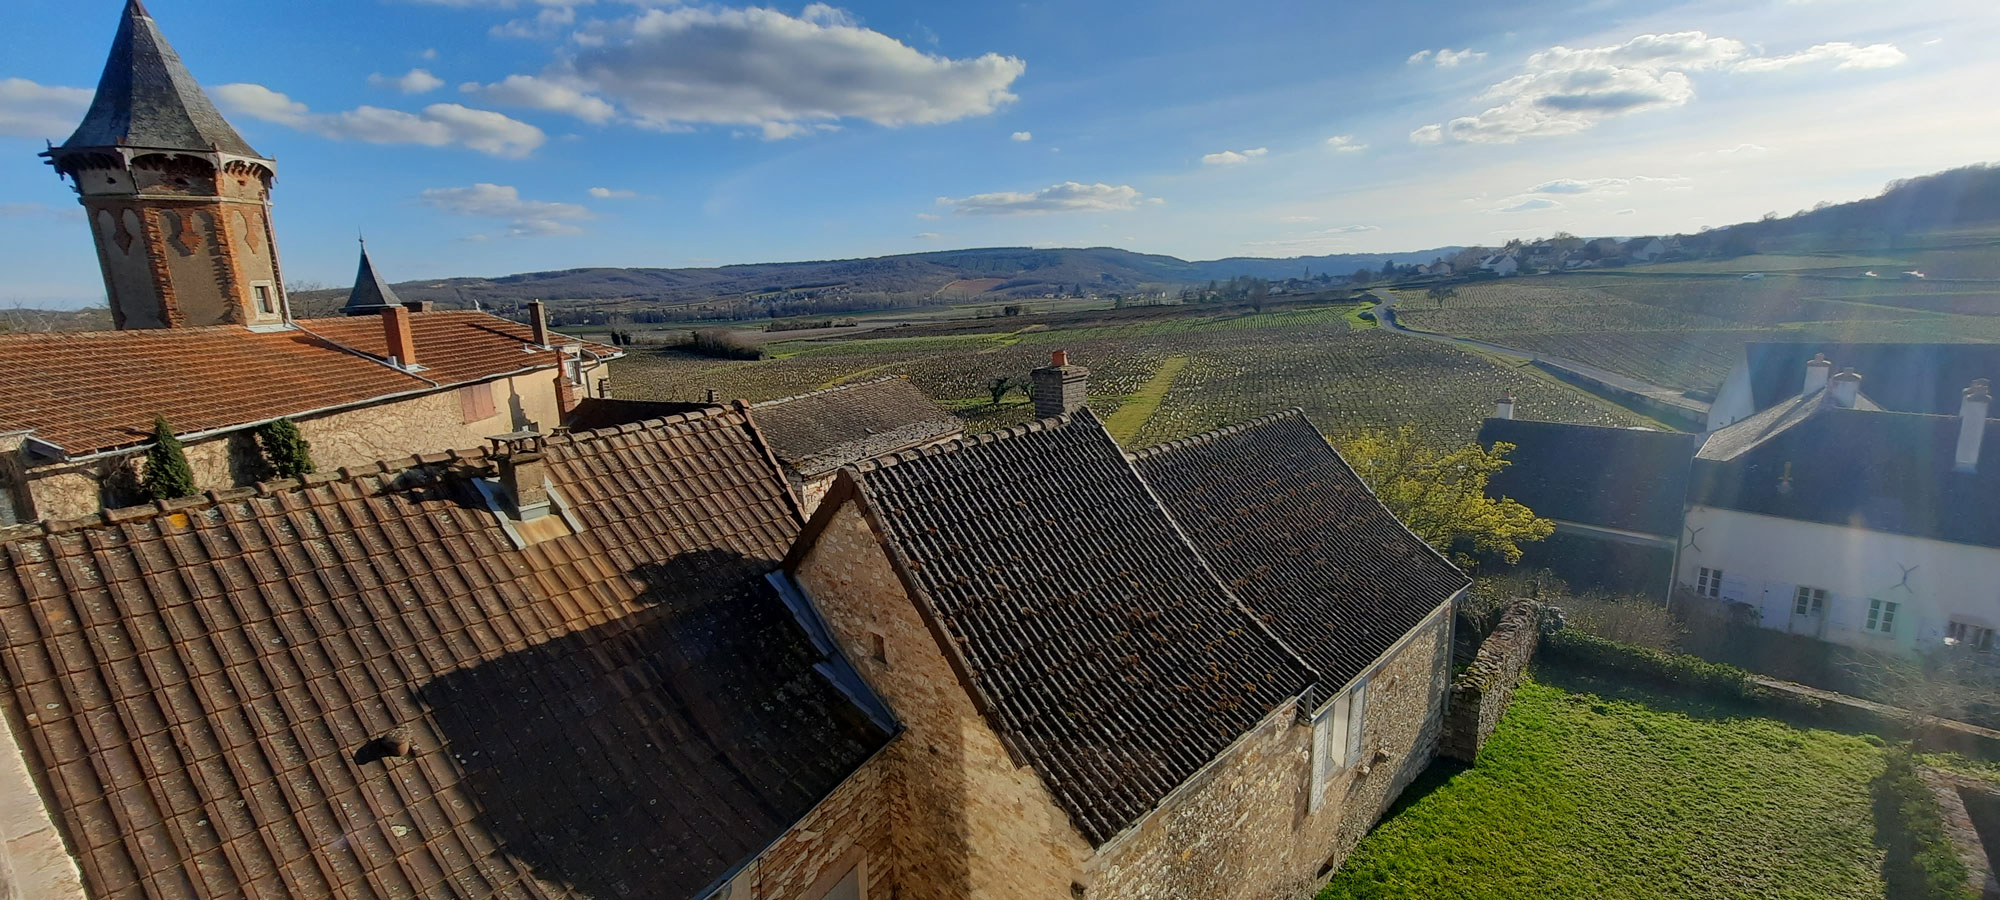 Depuis 1934, le château de Chamirey fait du vin sur son vignoble de 37 hectares divisé en 25 parcelles - Crédit : Romy Ducoulombier